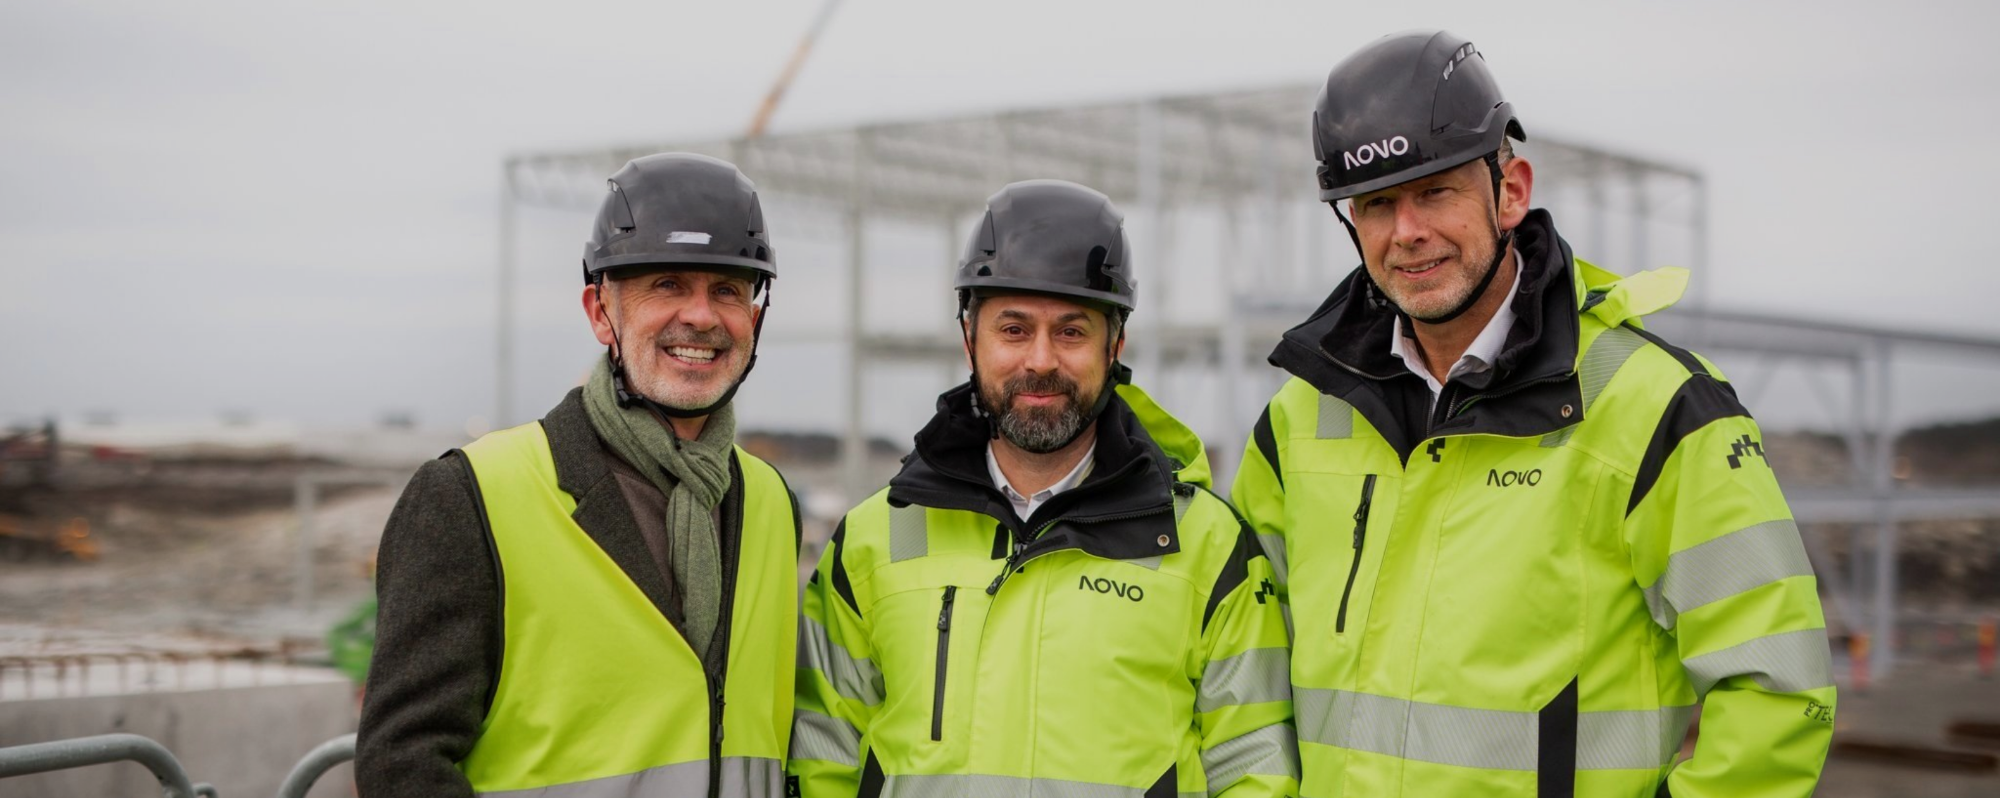 3 men in hi-vis coats on construction site